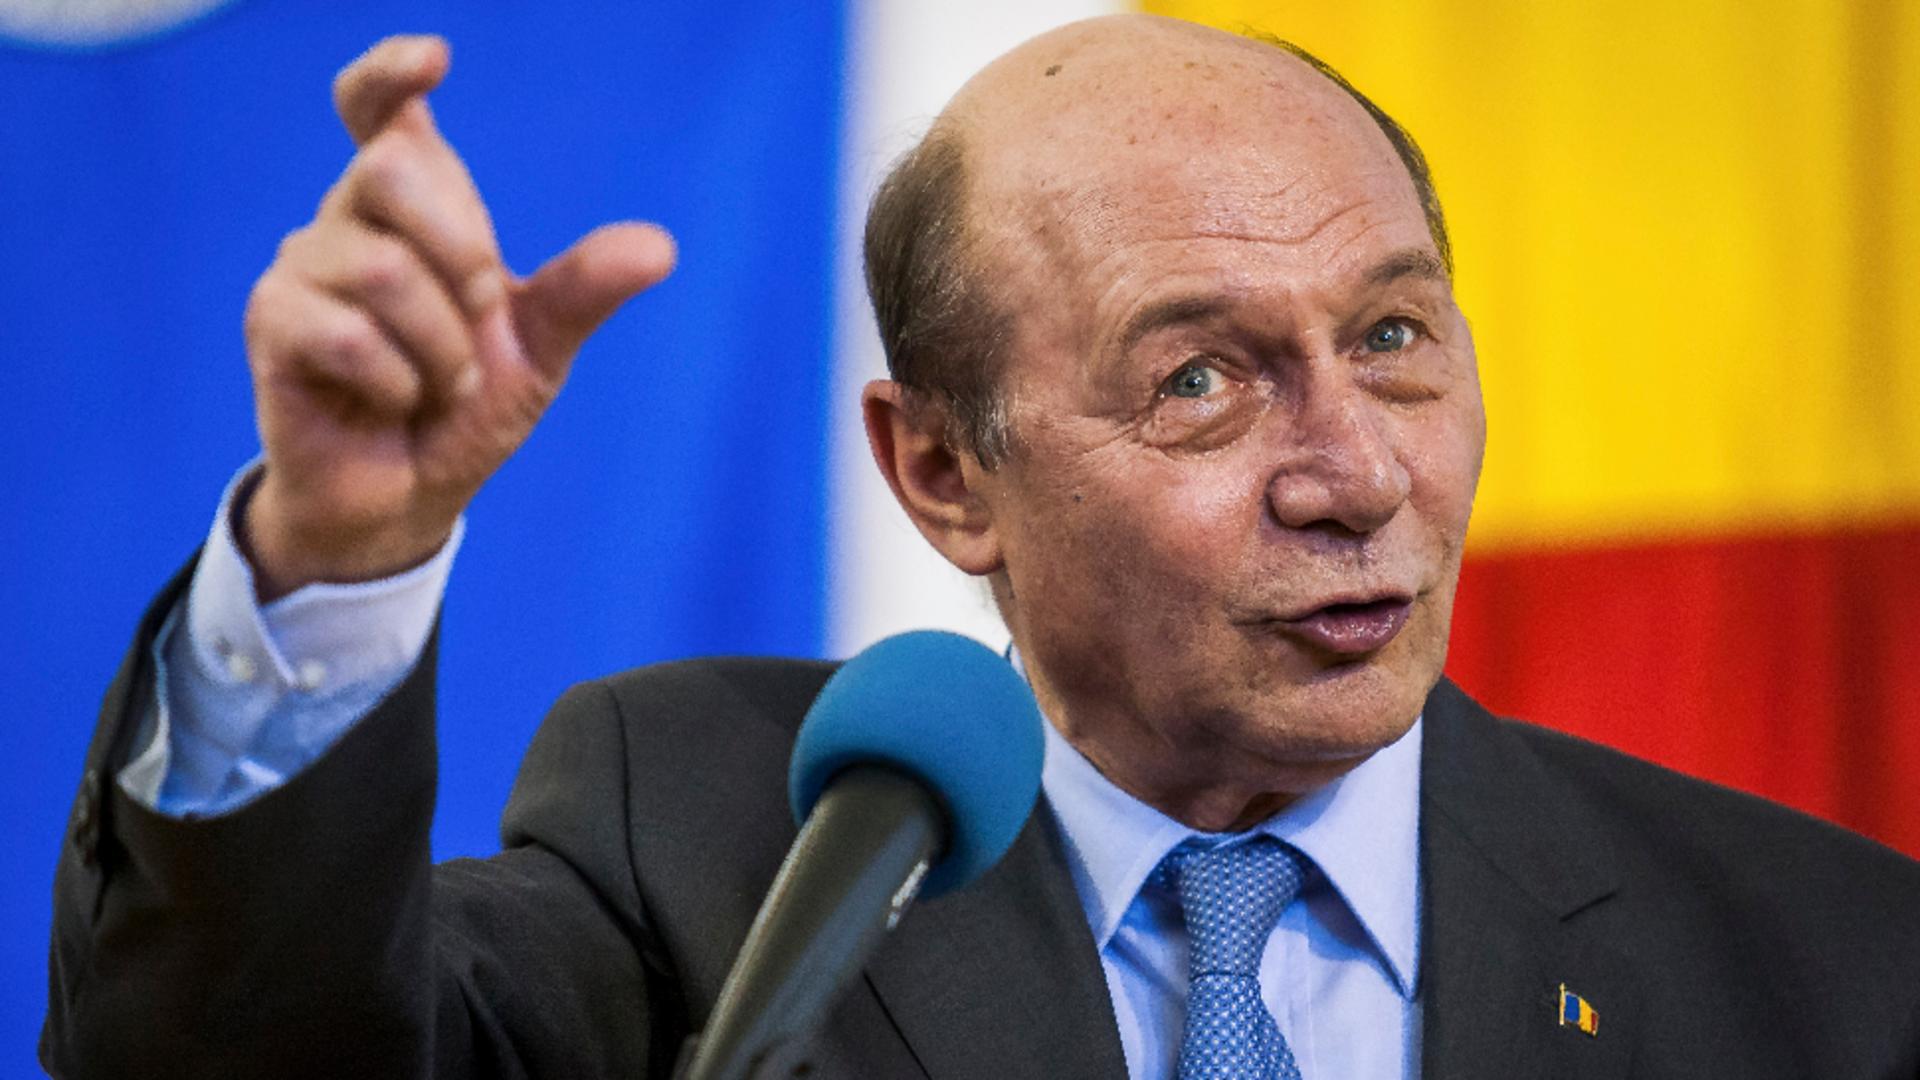 Valoarea tezaurului de la ruși este „mult mai mare” decât se știe, spune Traian Băsescu. Ce i-a răspuns Putin când l-a întrebat despre aur